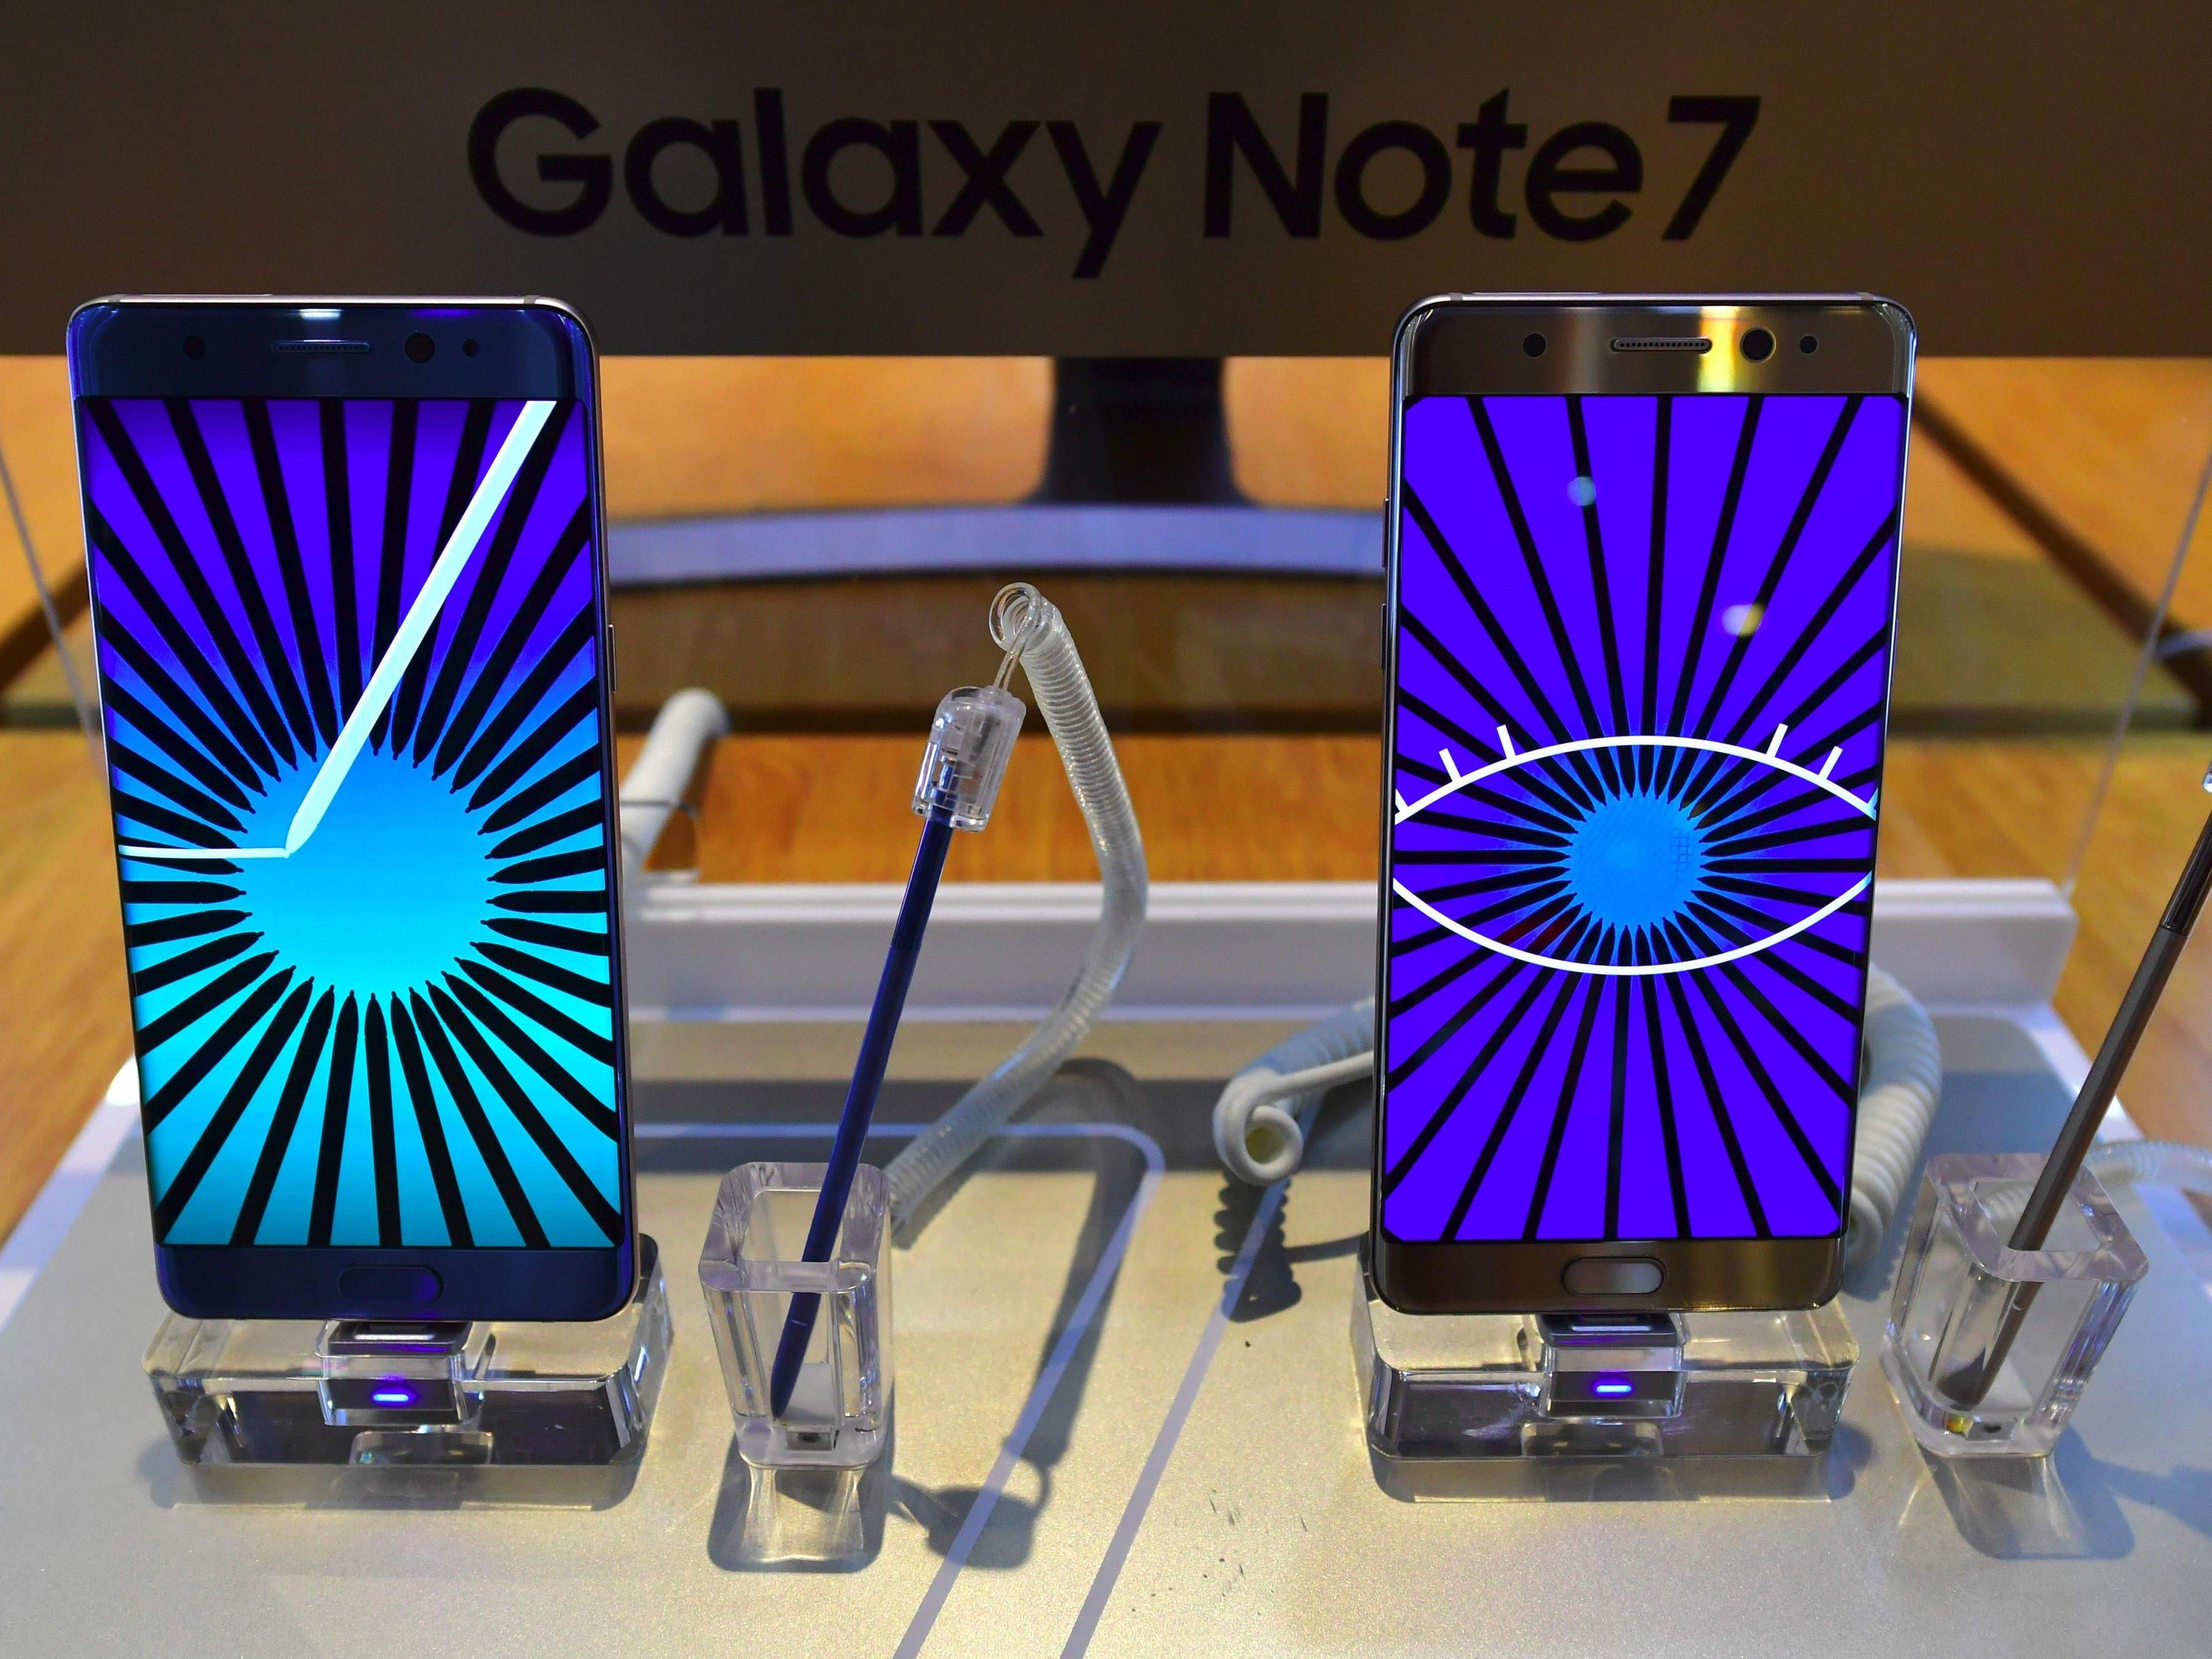 Das neue Galaxy Note 7 wird zurückgerufen